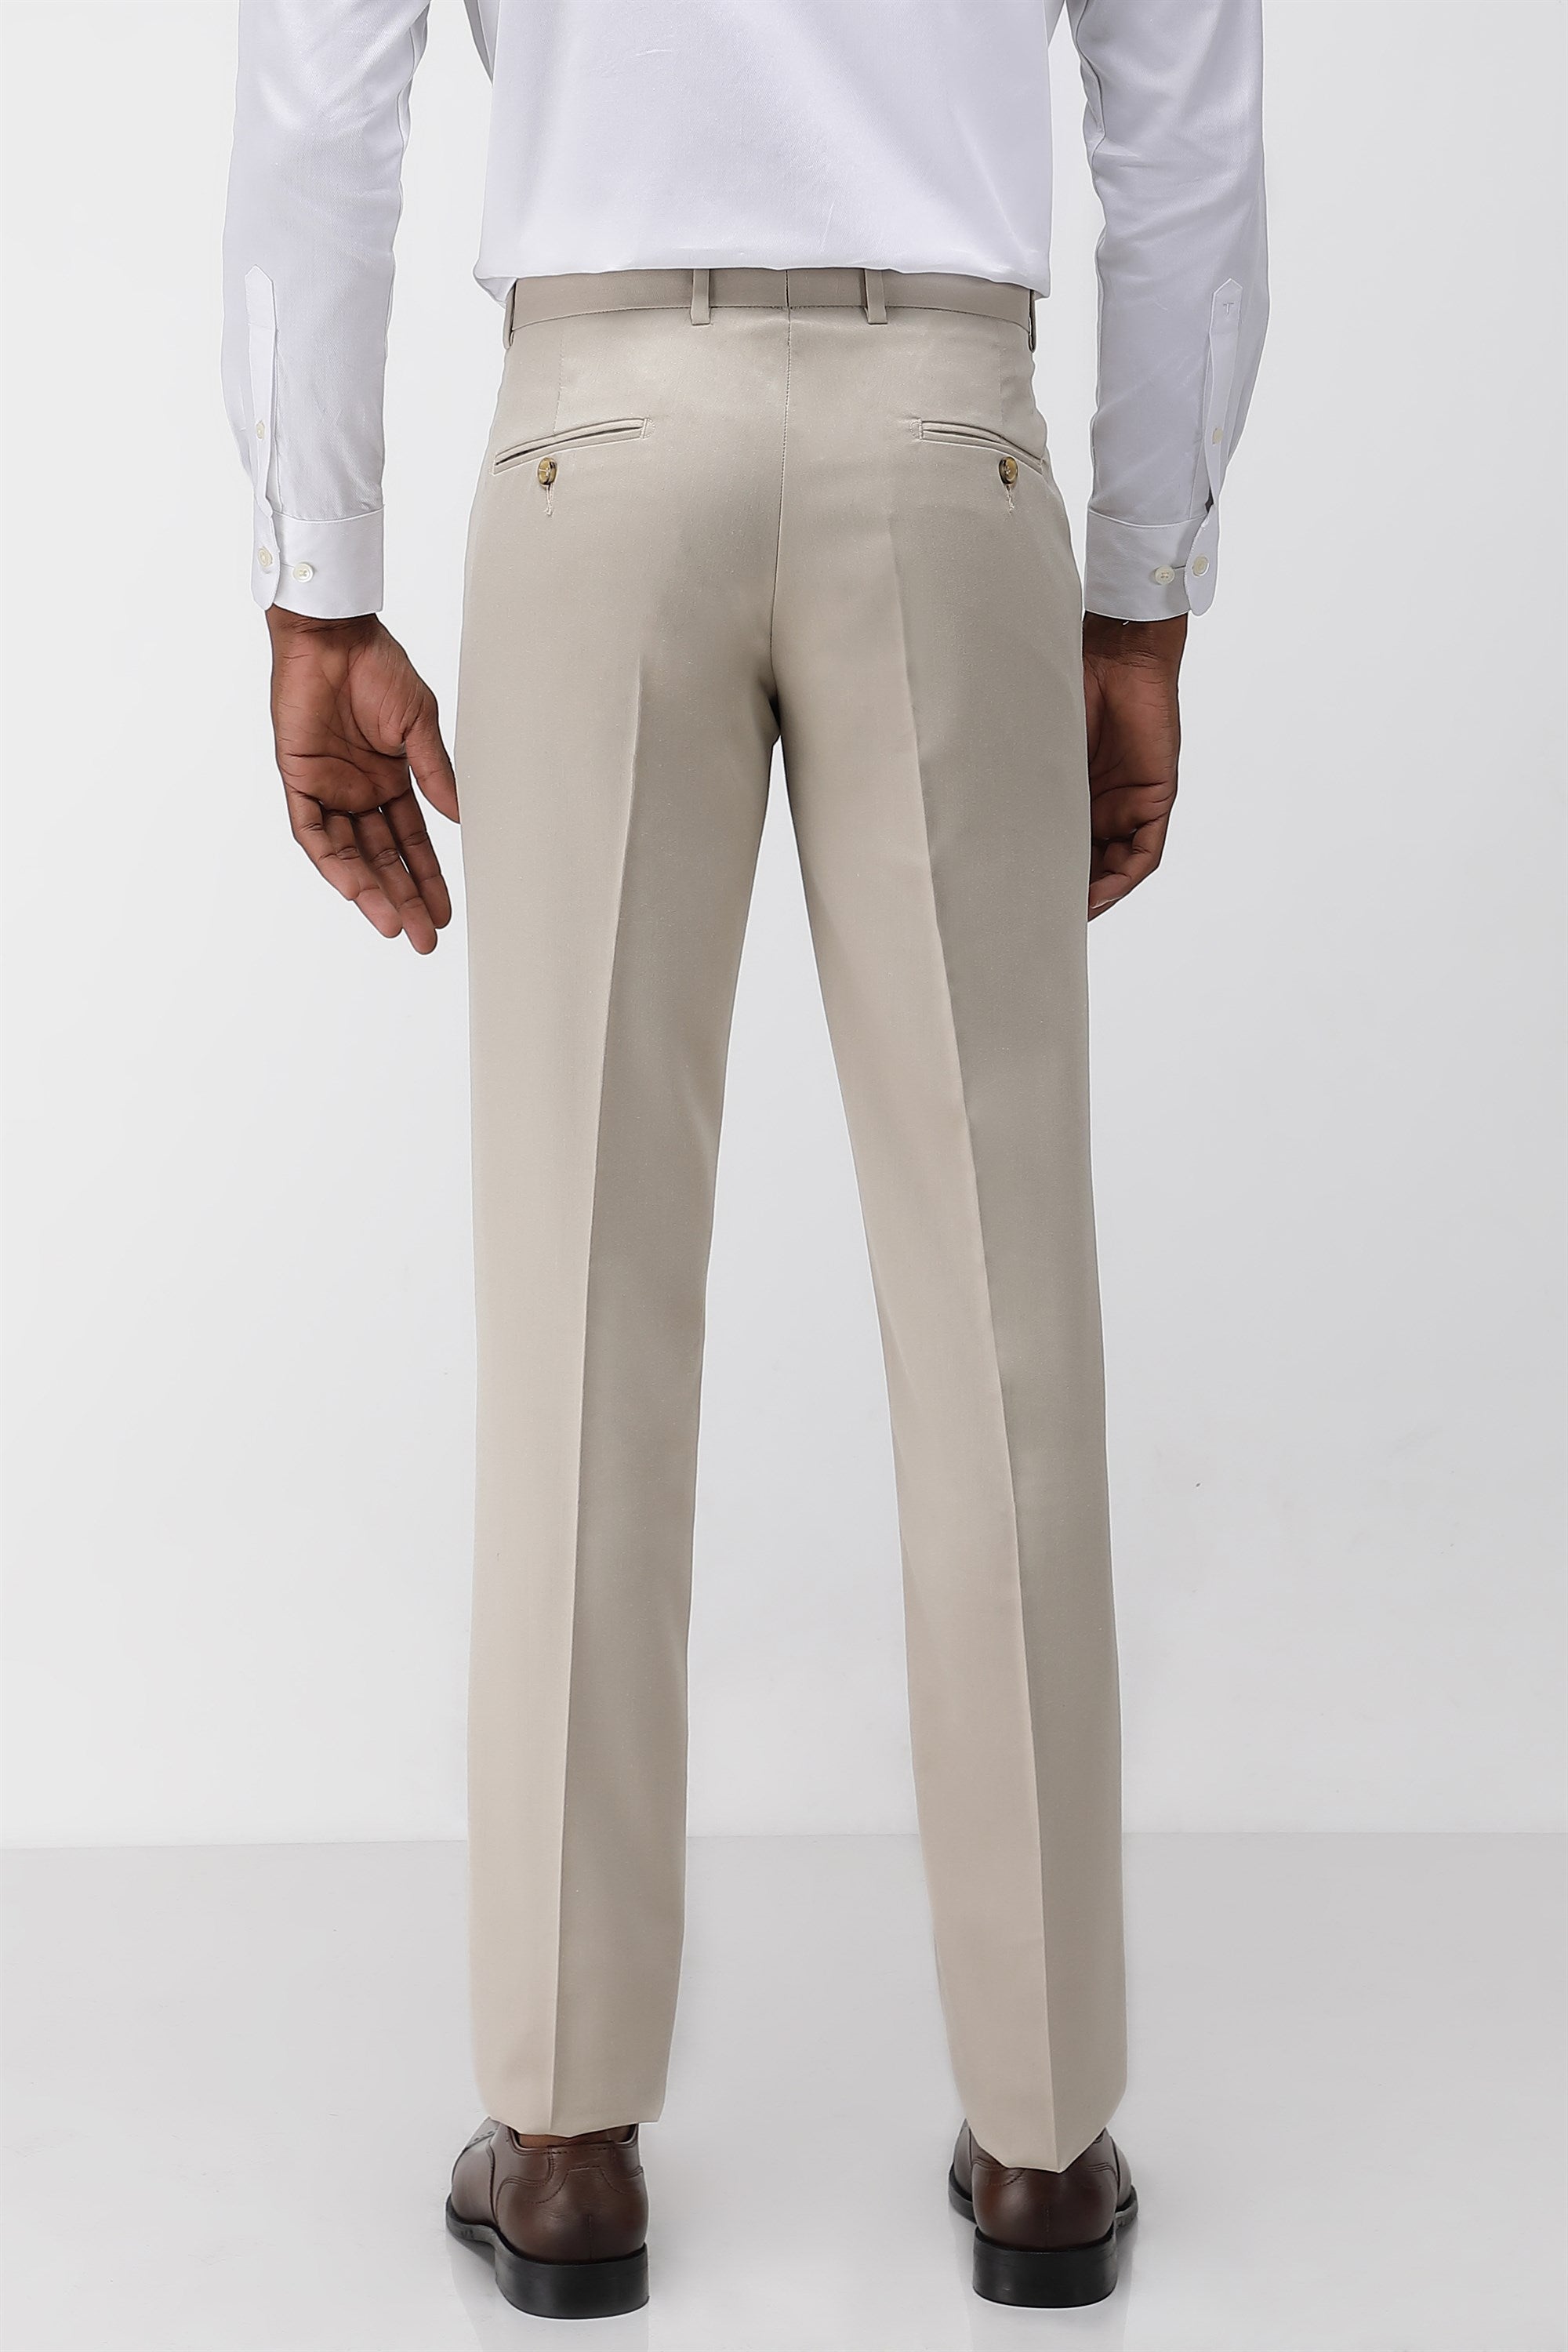 Dolce & Gabbana Black Brown Striped Men Formal Pants – AUMI 4